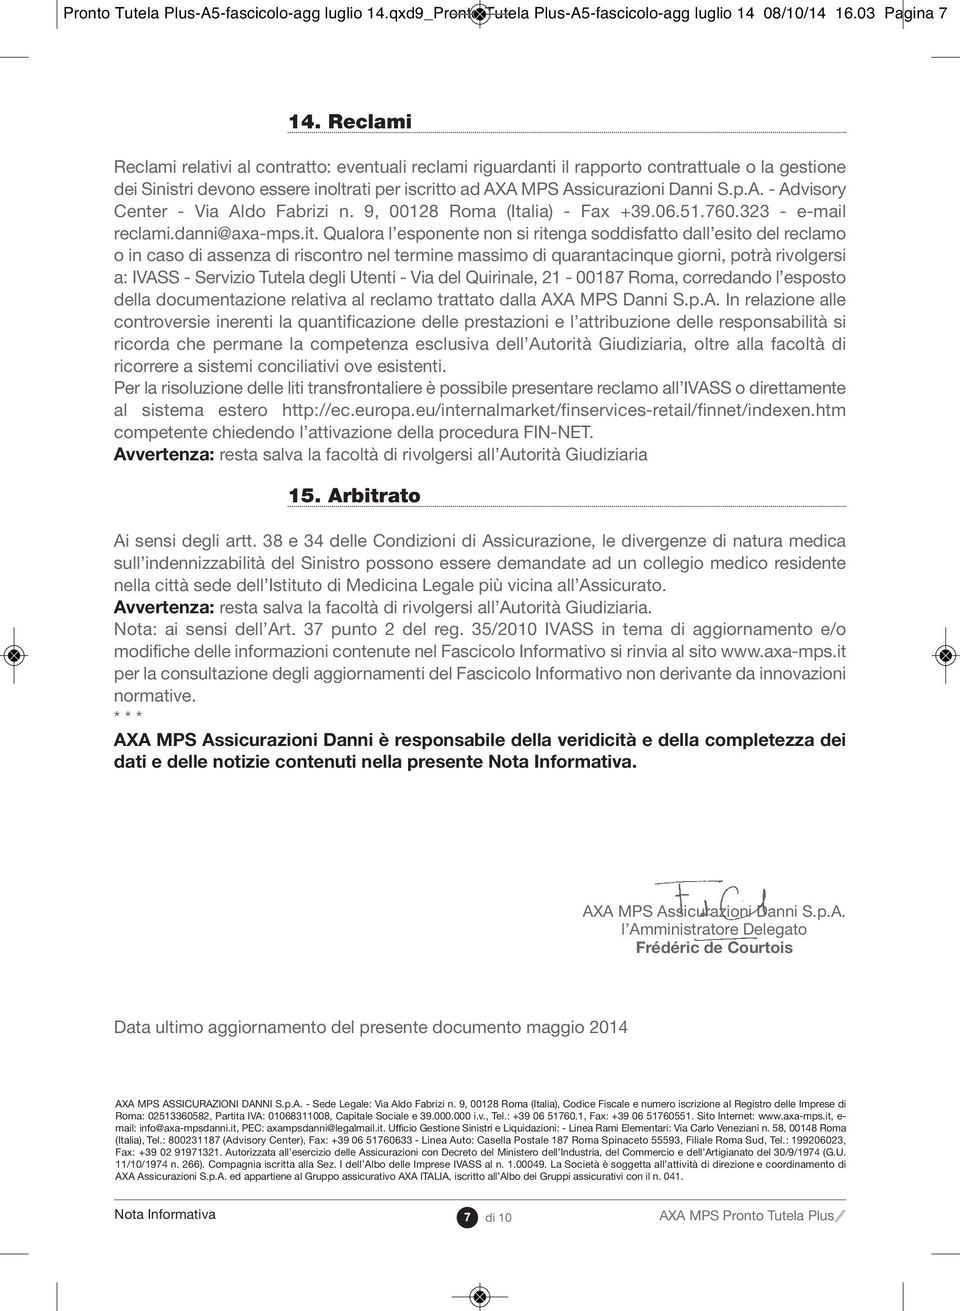 A MPS Assicurazioni Danni S.p.A. - Advisory Center - Via Aldo Fabrizi n. 9, 00128 Roma (Italia) - Fax +39.06.51.760.323 - e-mail reclami.danni@axa-mps.it.